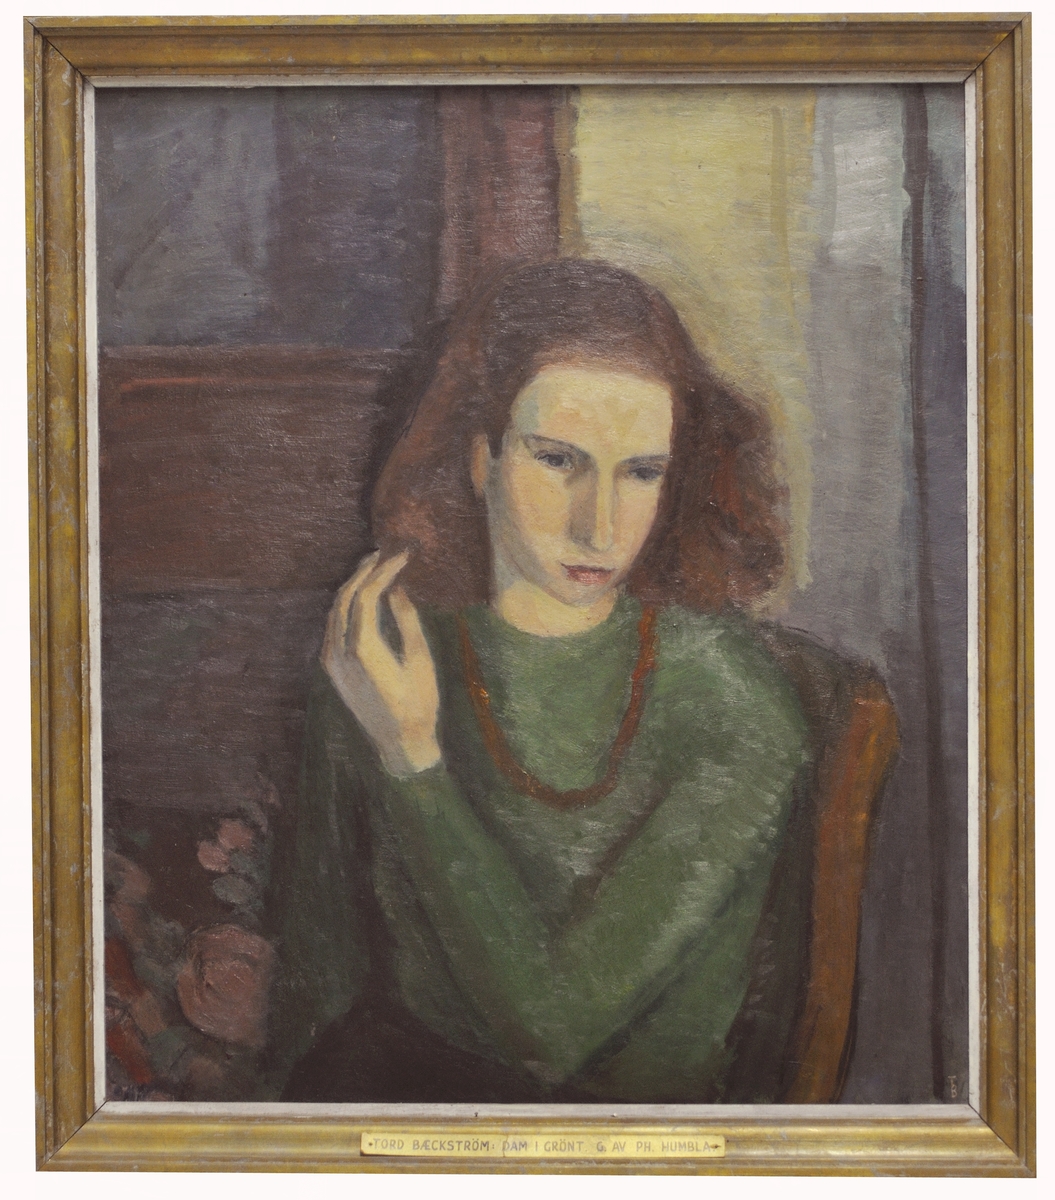 Målning, "Dam i grönt" av Tord Baeckström.
Porträttet föreställer konstnärens fru Gerd Baeckström.